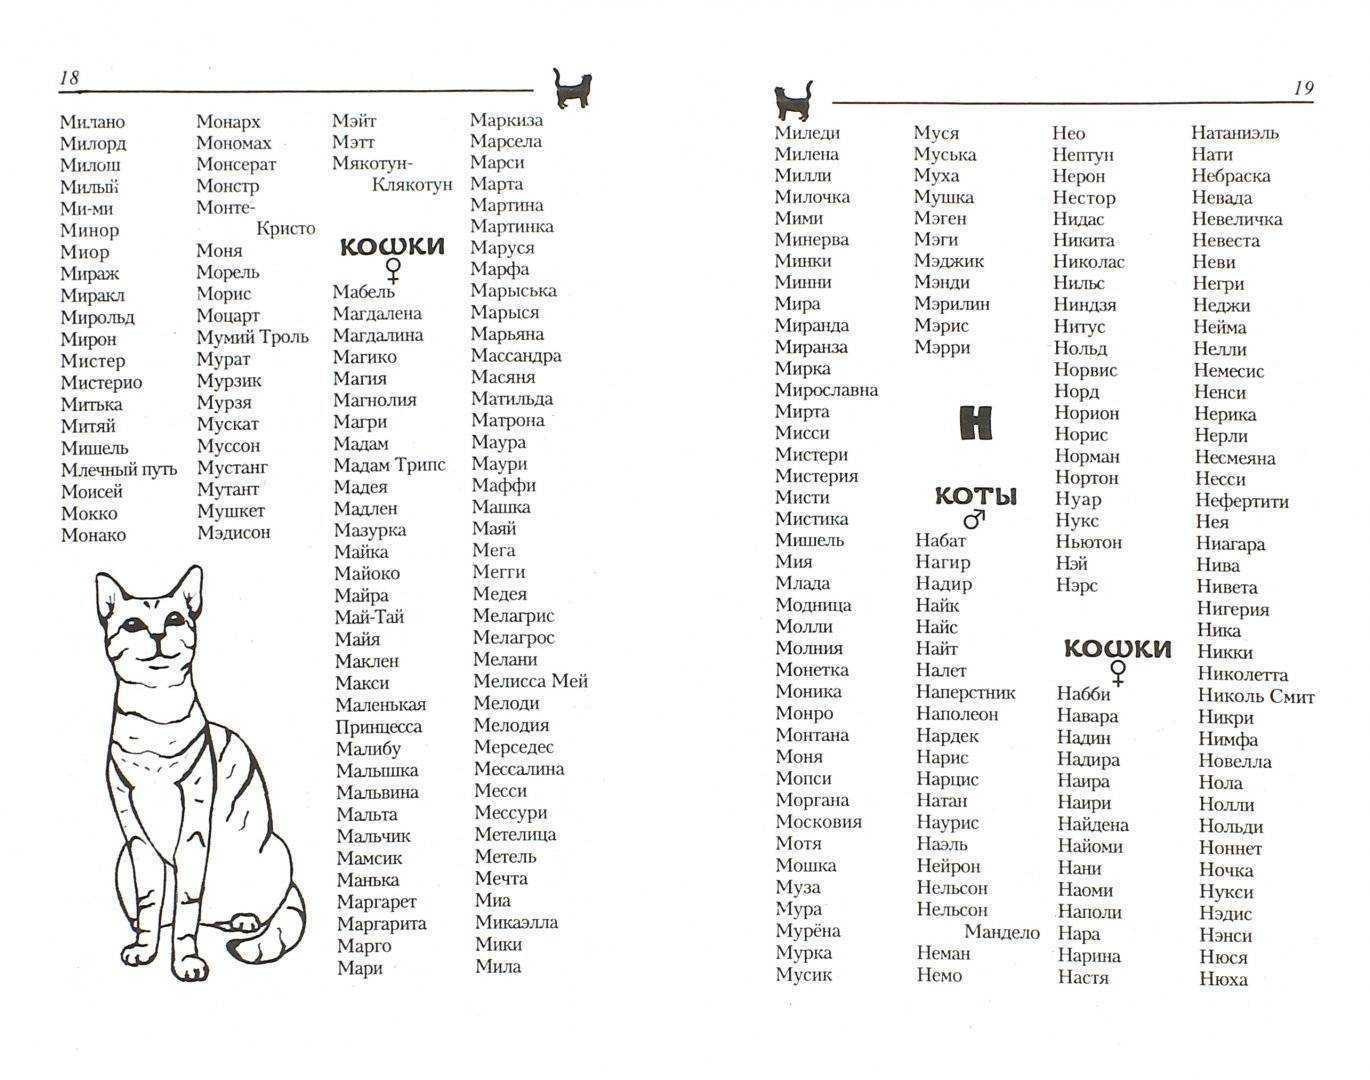 Клички для кошек девочек: 494 интересных русских имён на 2021 год